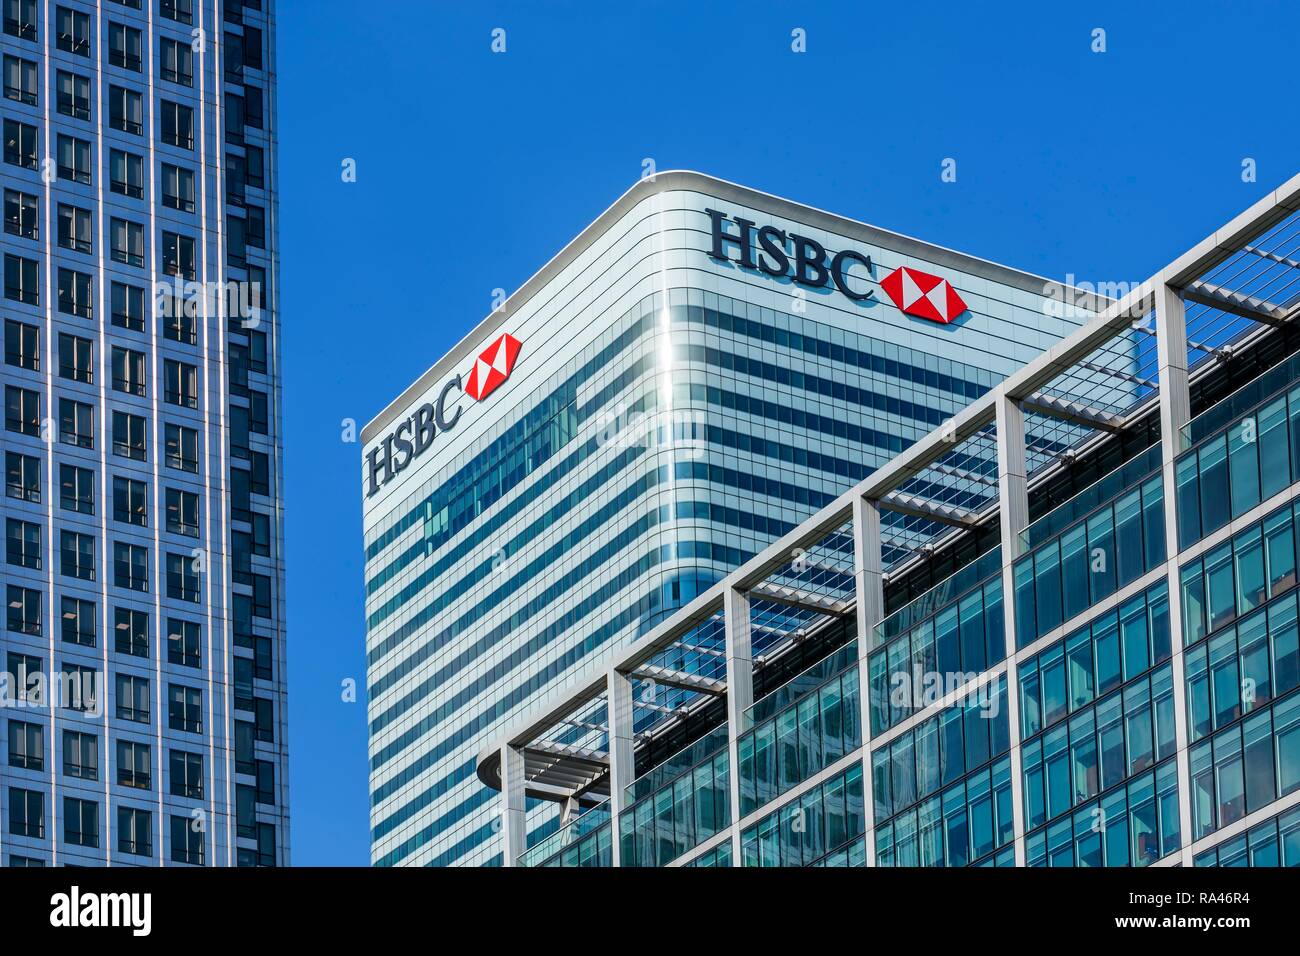 La sede centrale della banca HSBC, Canary Wharf, London, Regno Unito Foto Stock